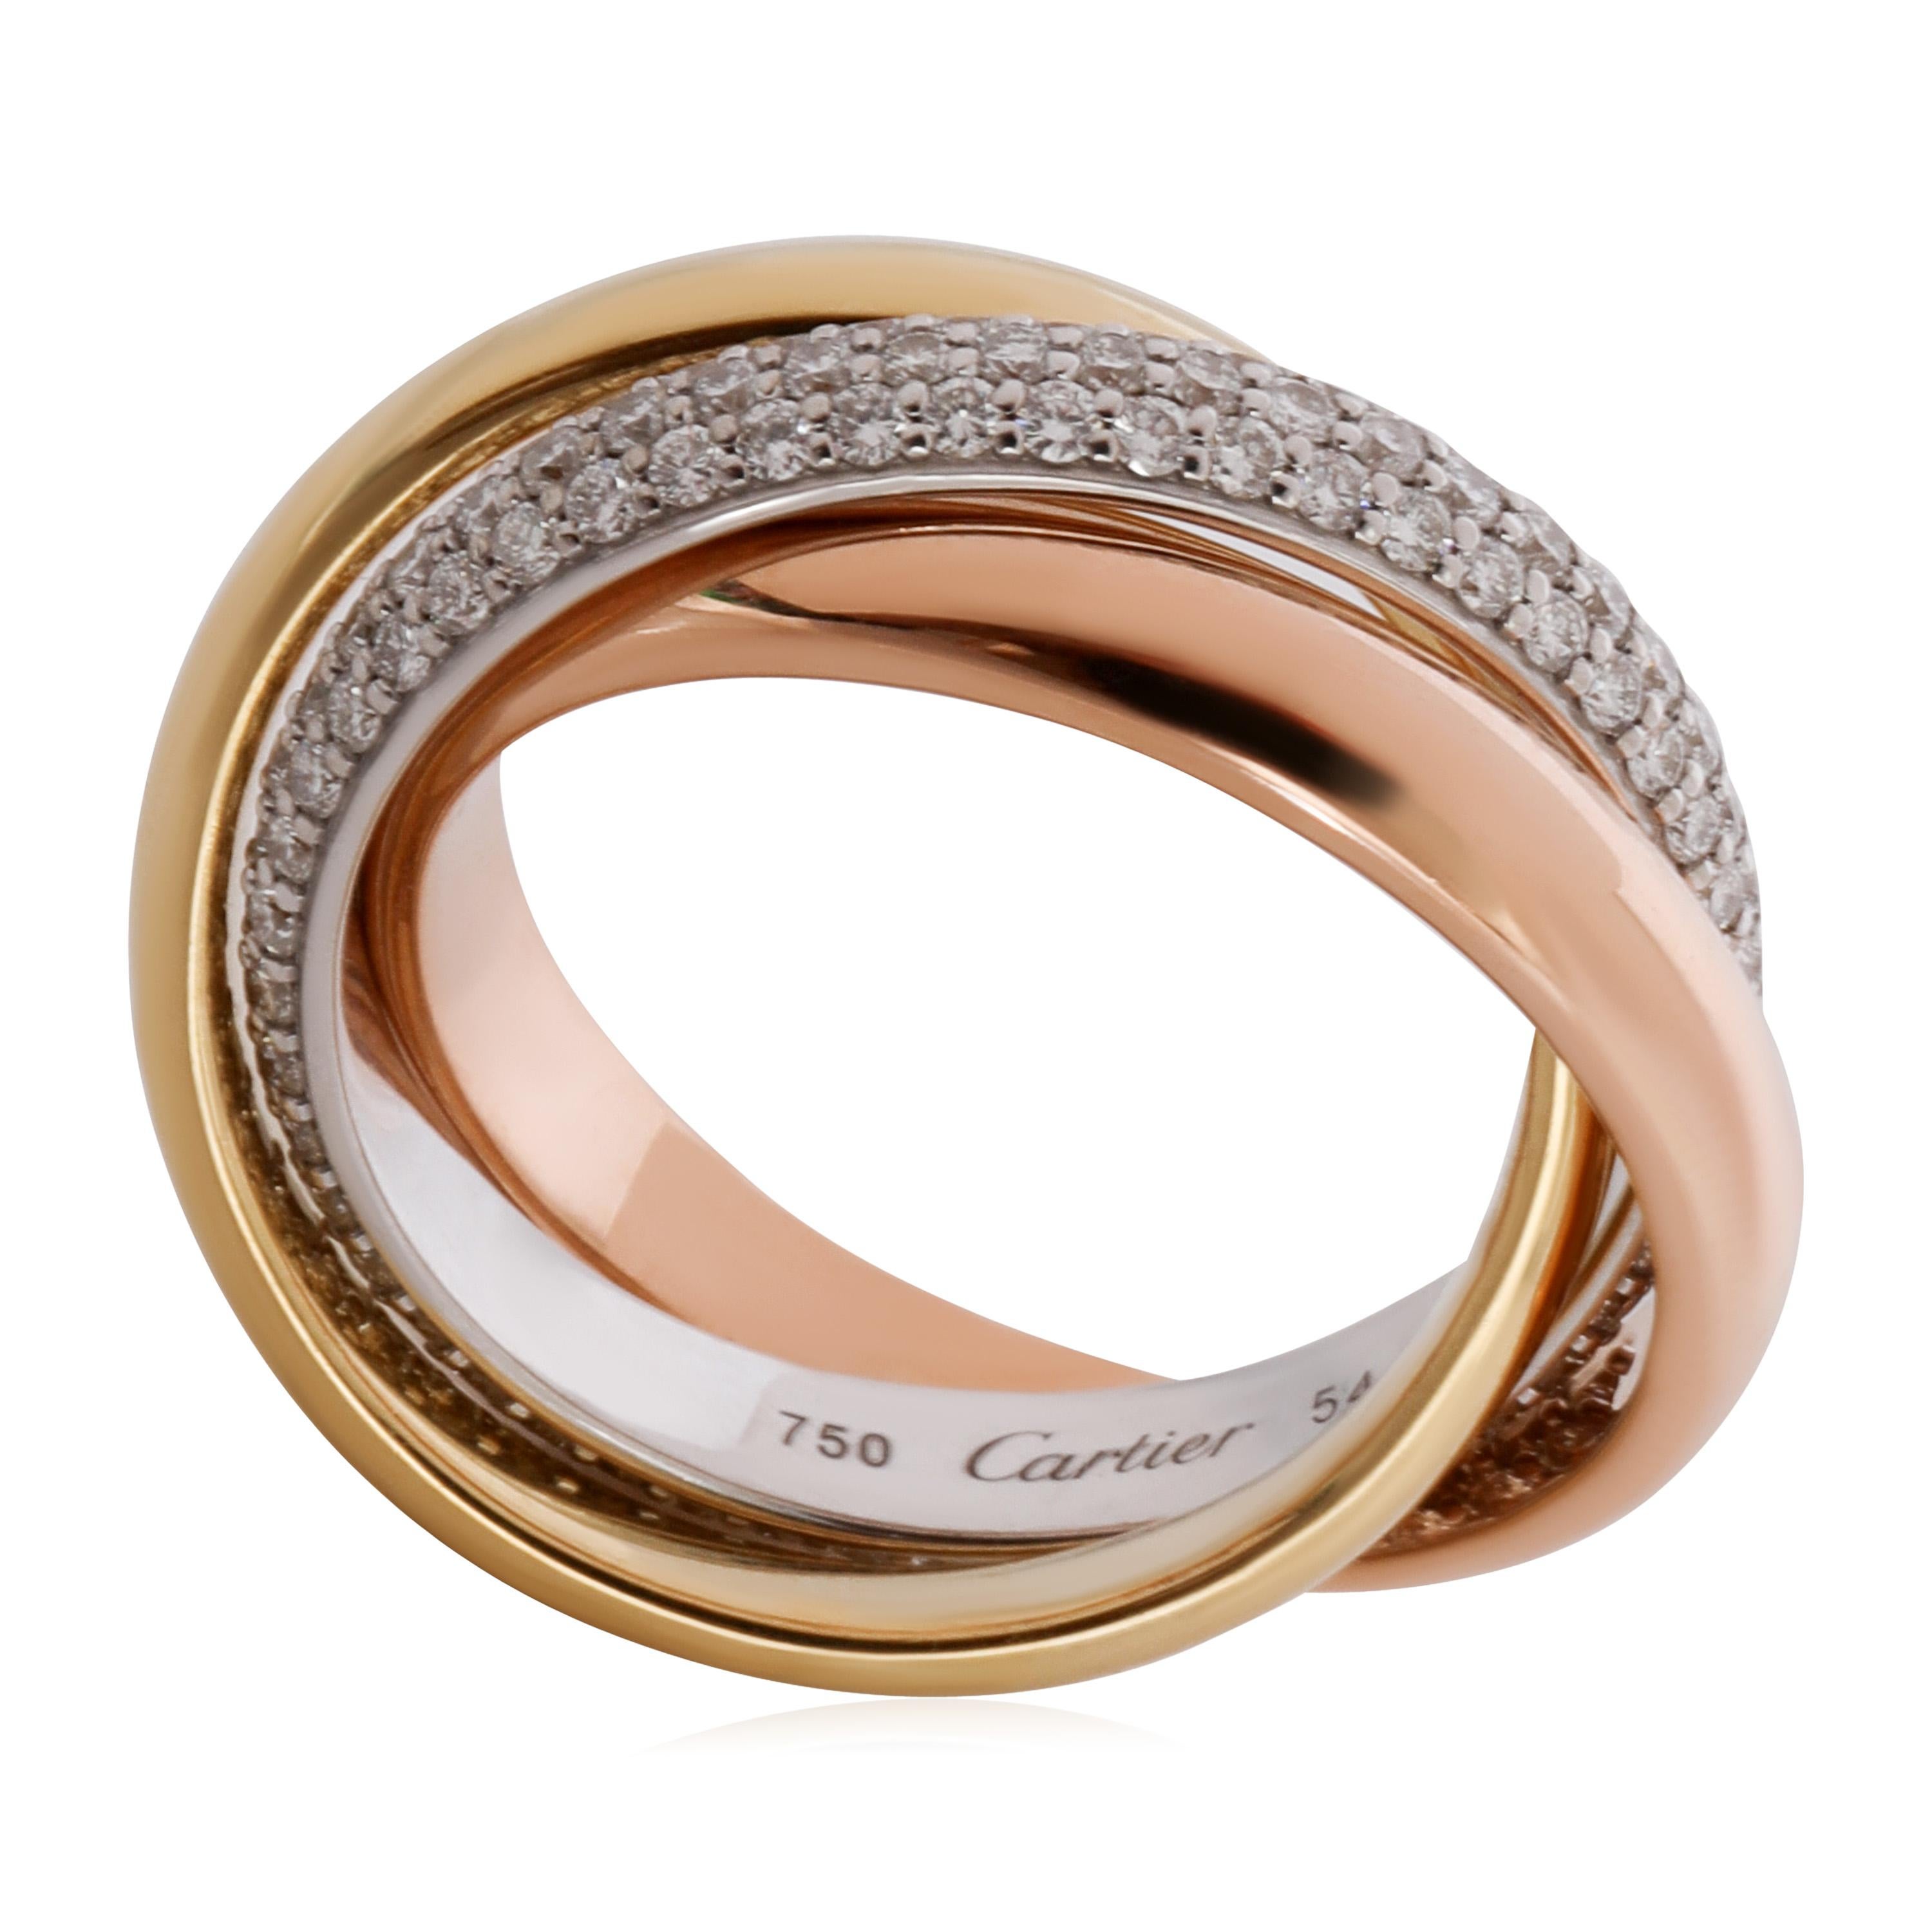 Cartier Trinity Diamant Ring in 18K 3 Ton Gold 0,99 CTW

PRIMÄRE DETAILS
SKU: 124374
Auflistung Titel: Cartier Trinity Diamant Ring in 18K 3 Ton Gold 0,99 CTW
Condit Beschreibung: Verkauft für 13,100 USD. In ausgezeichnetem Zustand und kürzlich